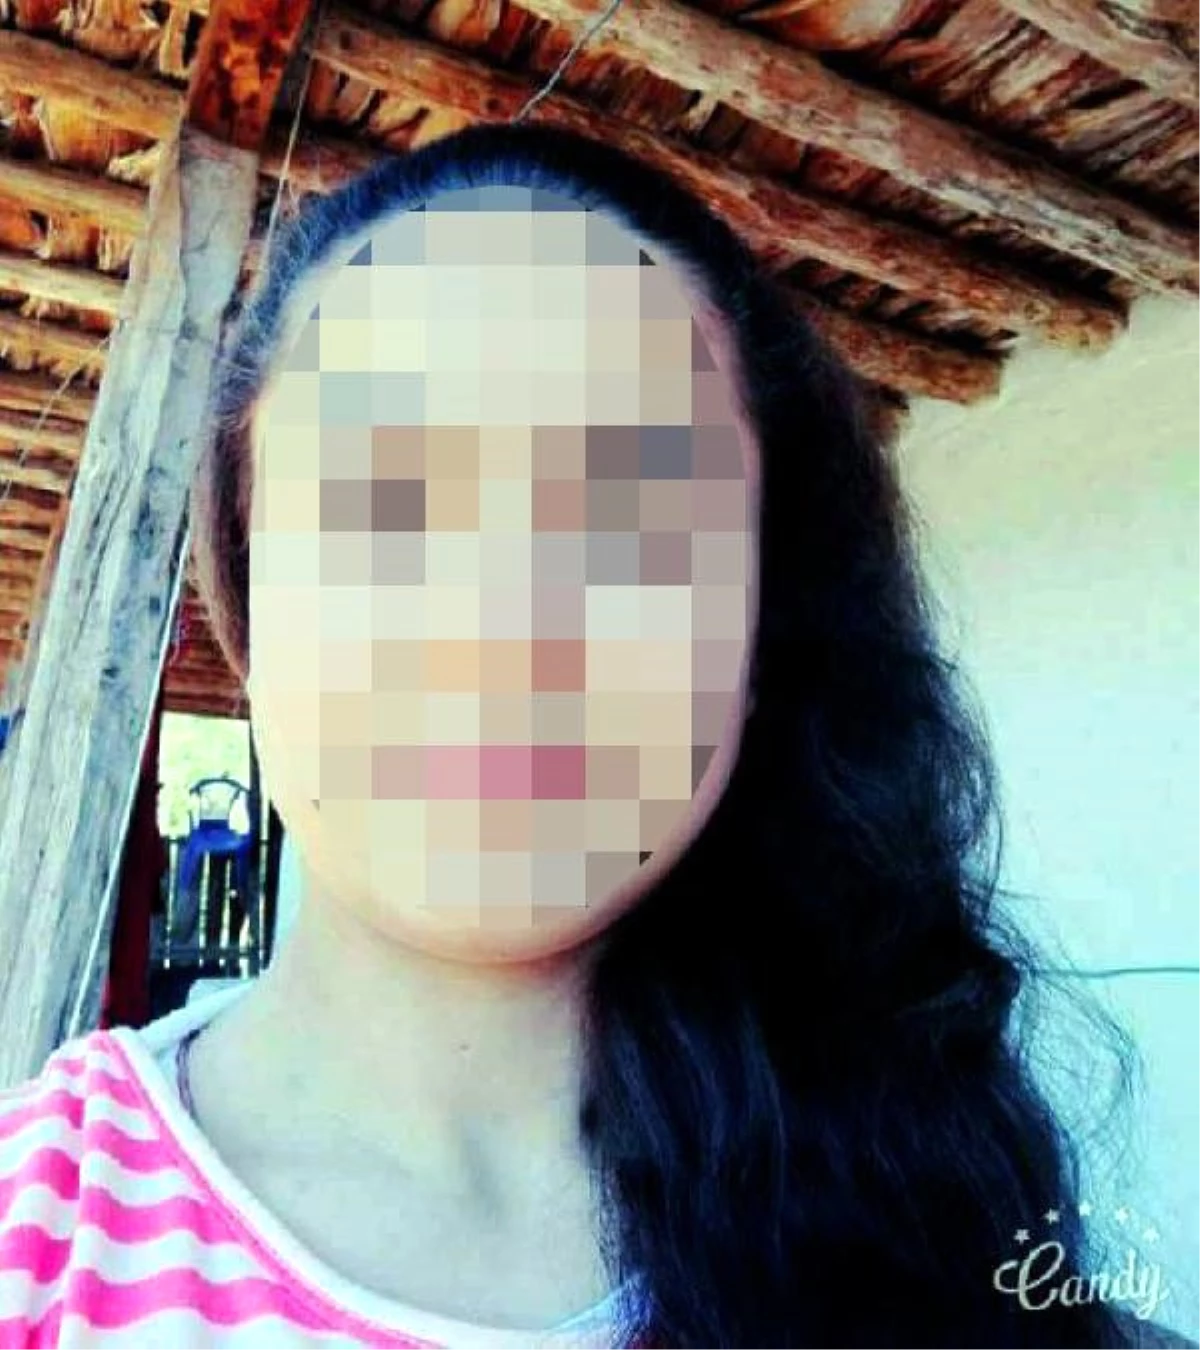 Kaçırıldığı İddia Edilen 13 Yaşındaki Kız Bulundu